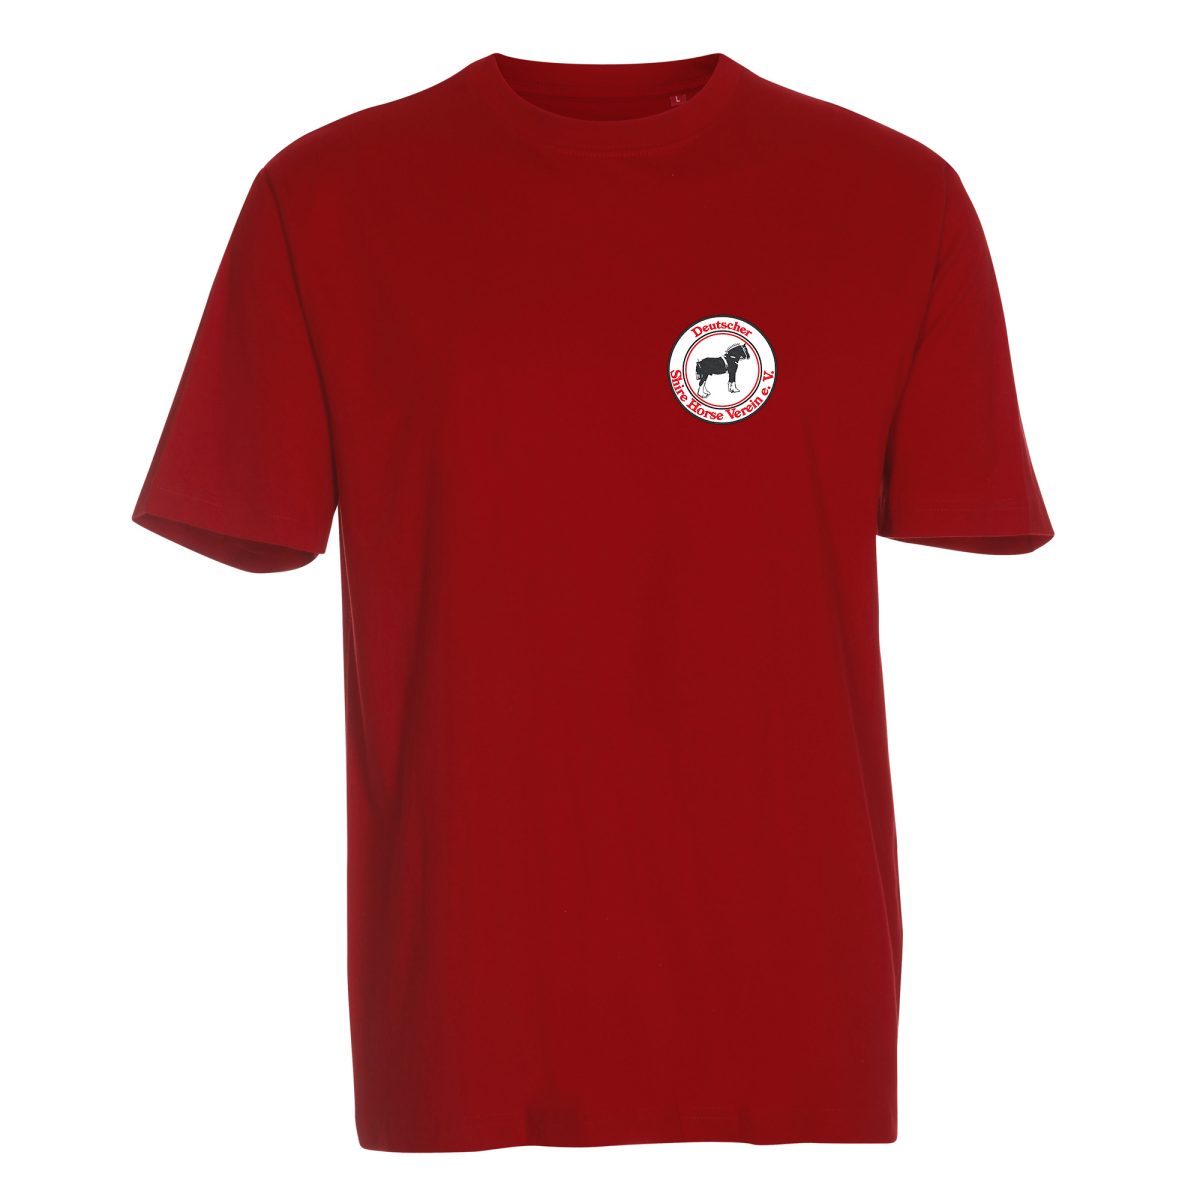 DSHV T-Shirt Herren bedruckt Rot